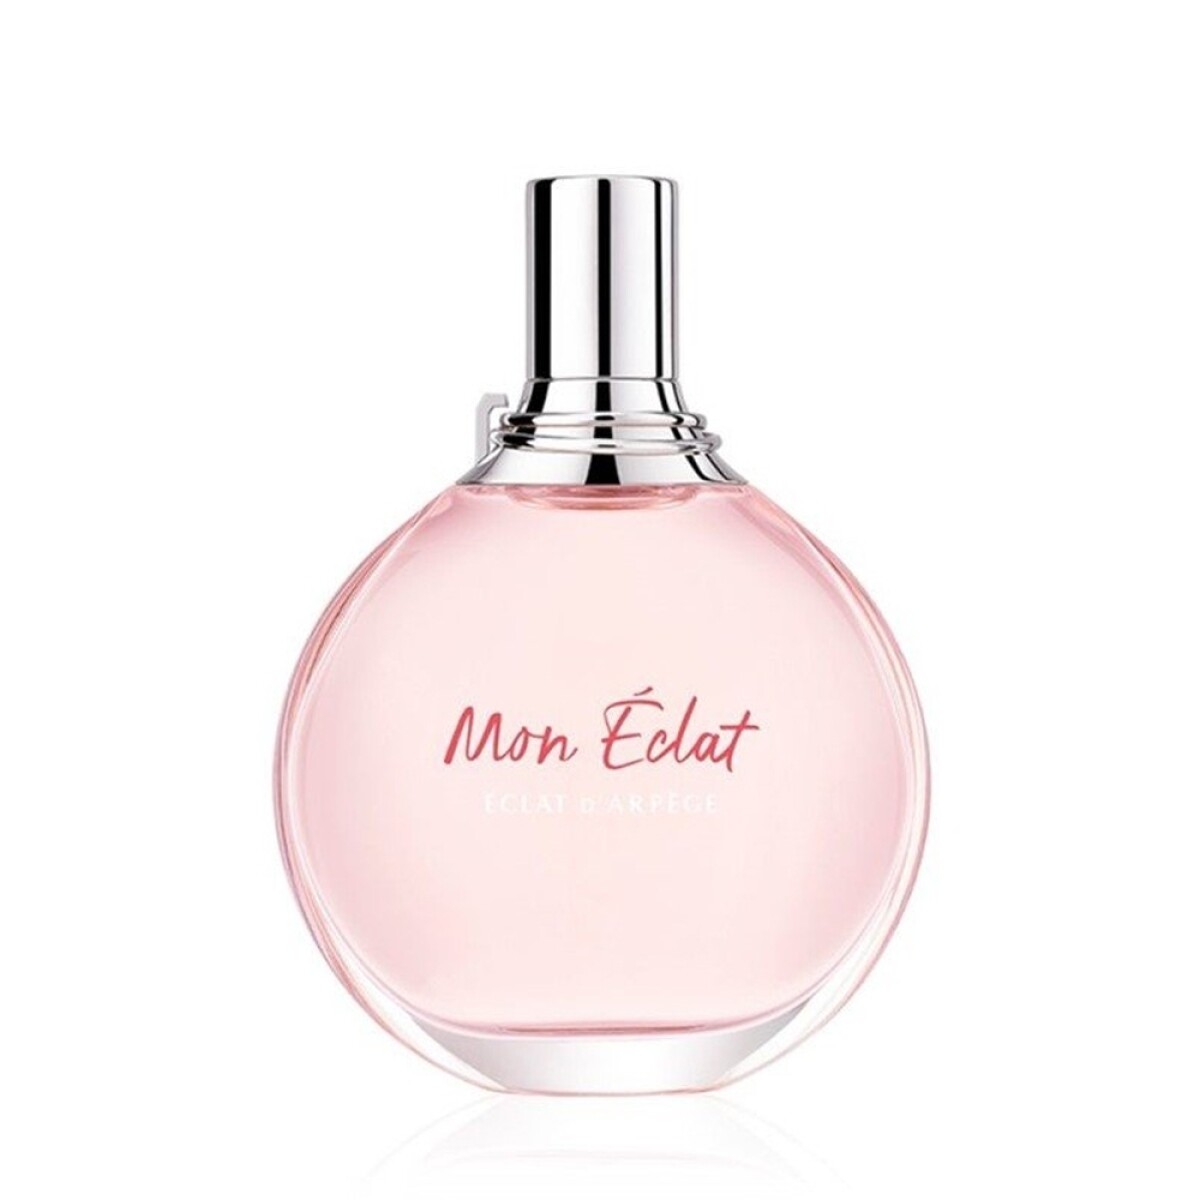 Perfume Mon Eclat Edt 50 Ml 